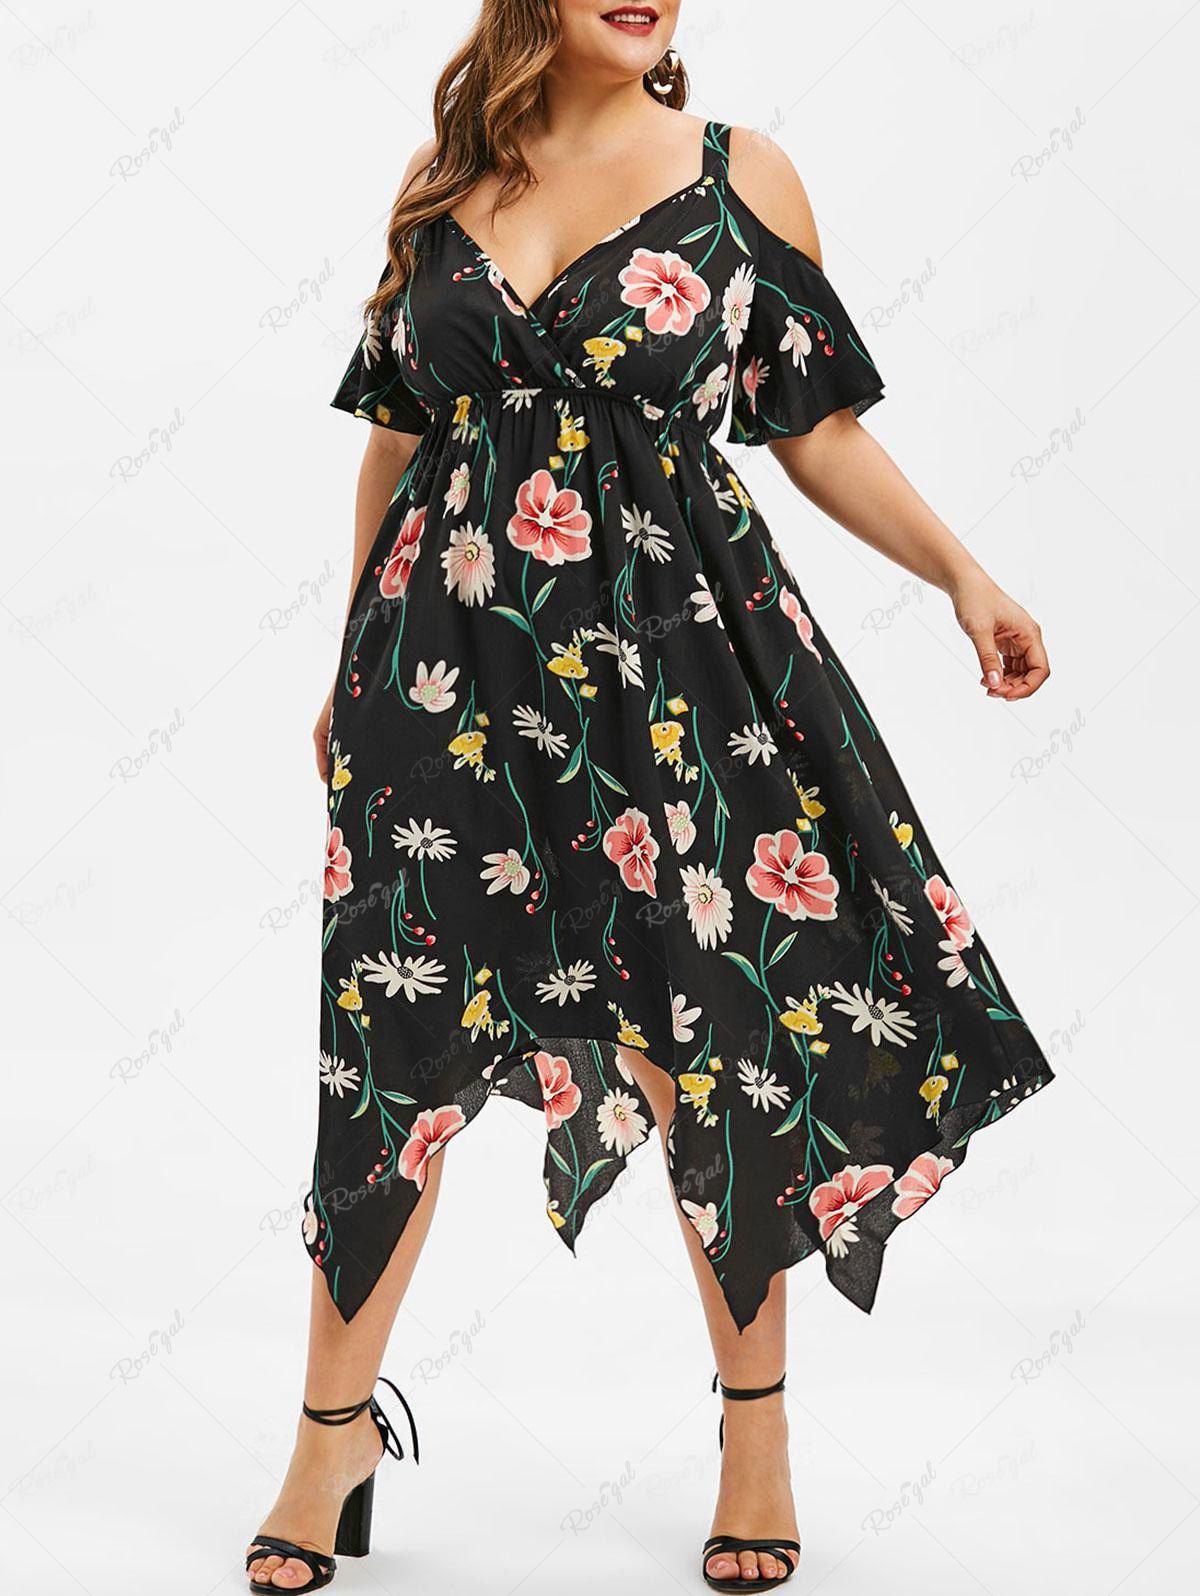 Chic Plus Size Flower Print Handkerchief Cold Shoulder Dress  